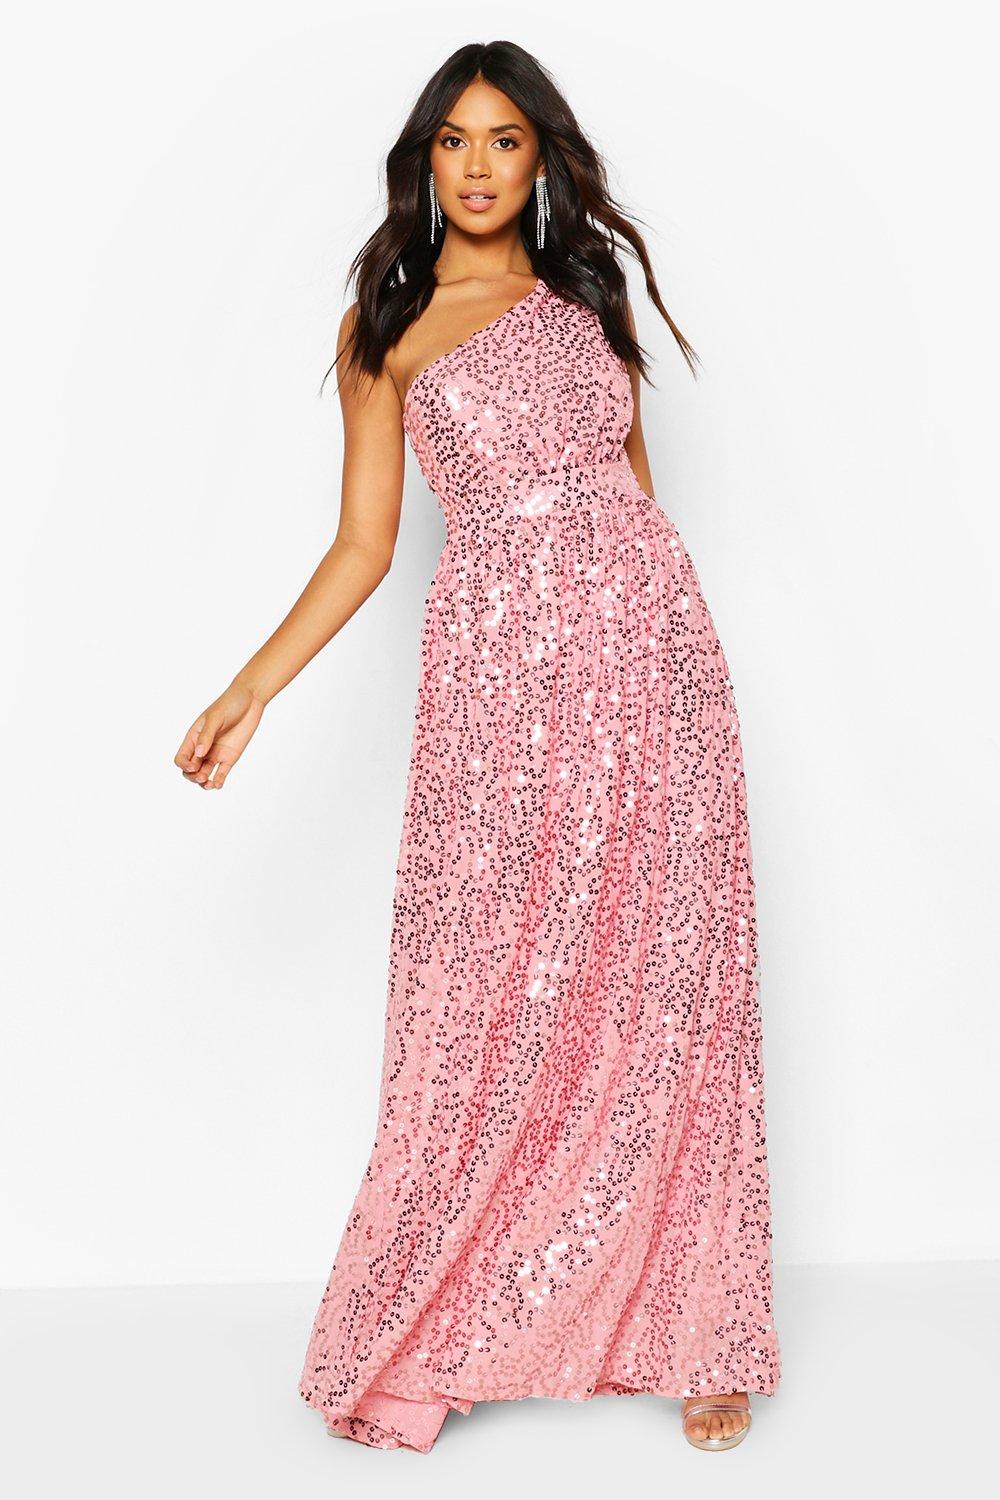 boohoo pink sequin dress